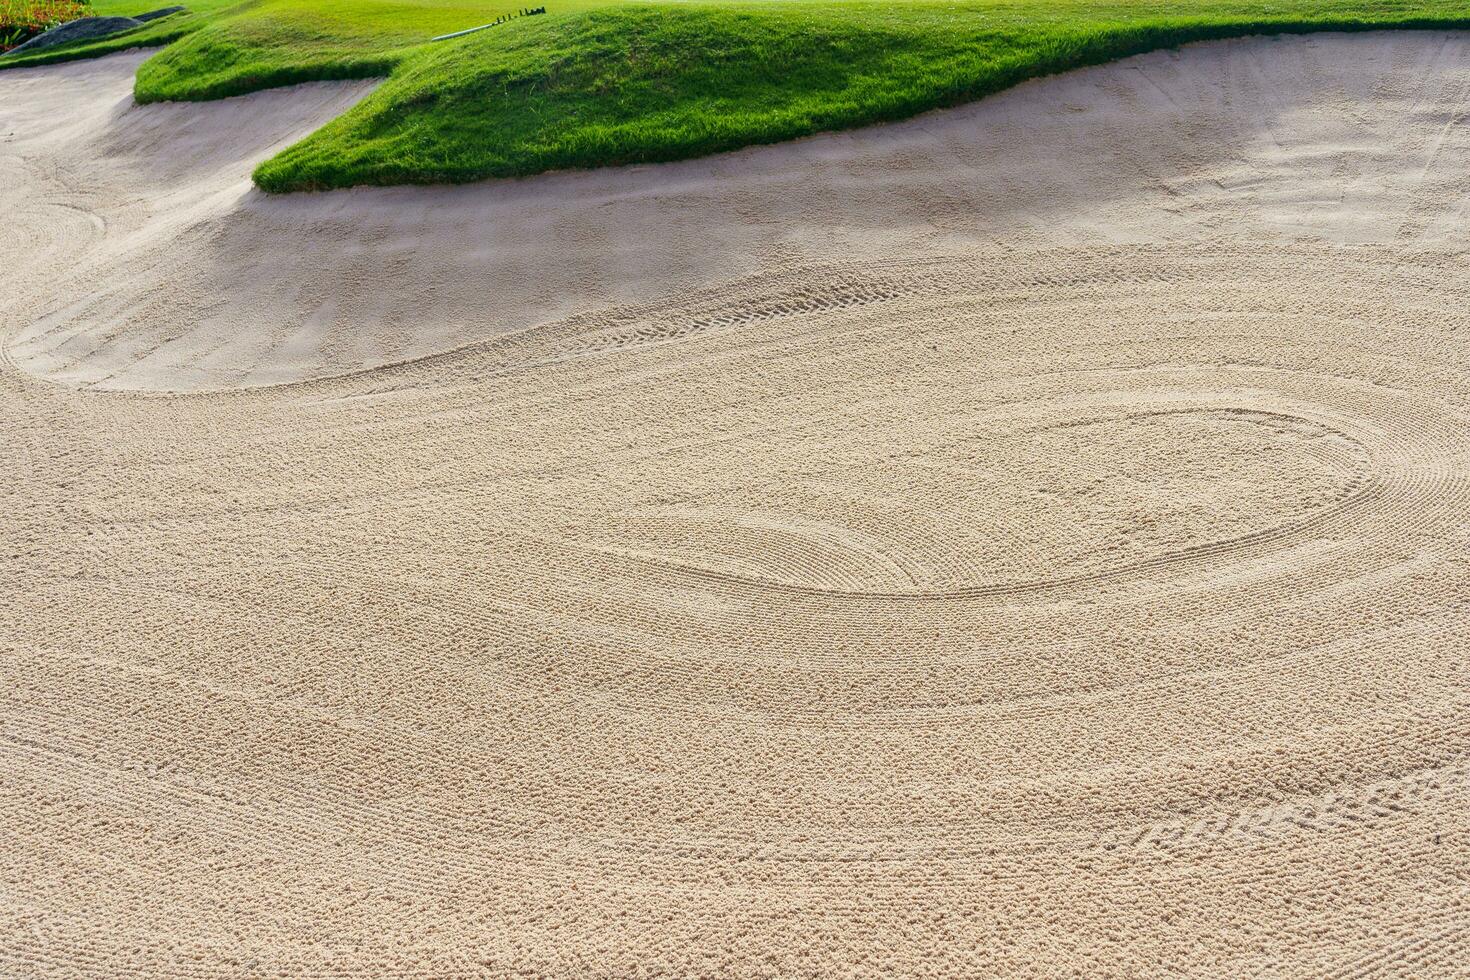 golf kurs sand grop bunkra estetisk bakgrund, används som hinder för golf tävlingar för svårighet och faller av de kurs för skönhet foto